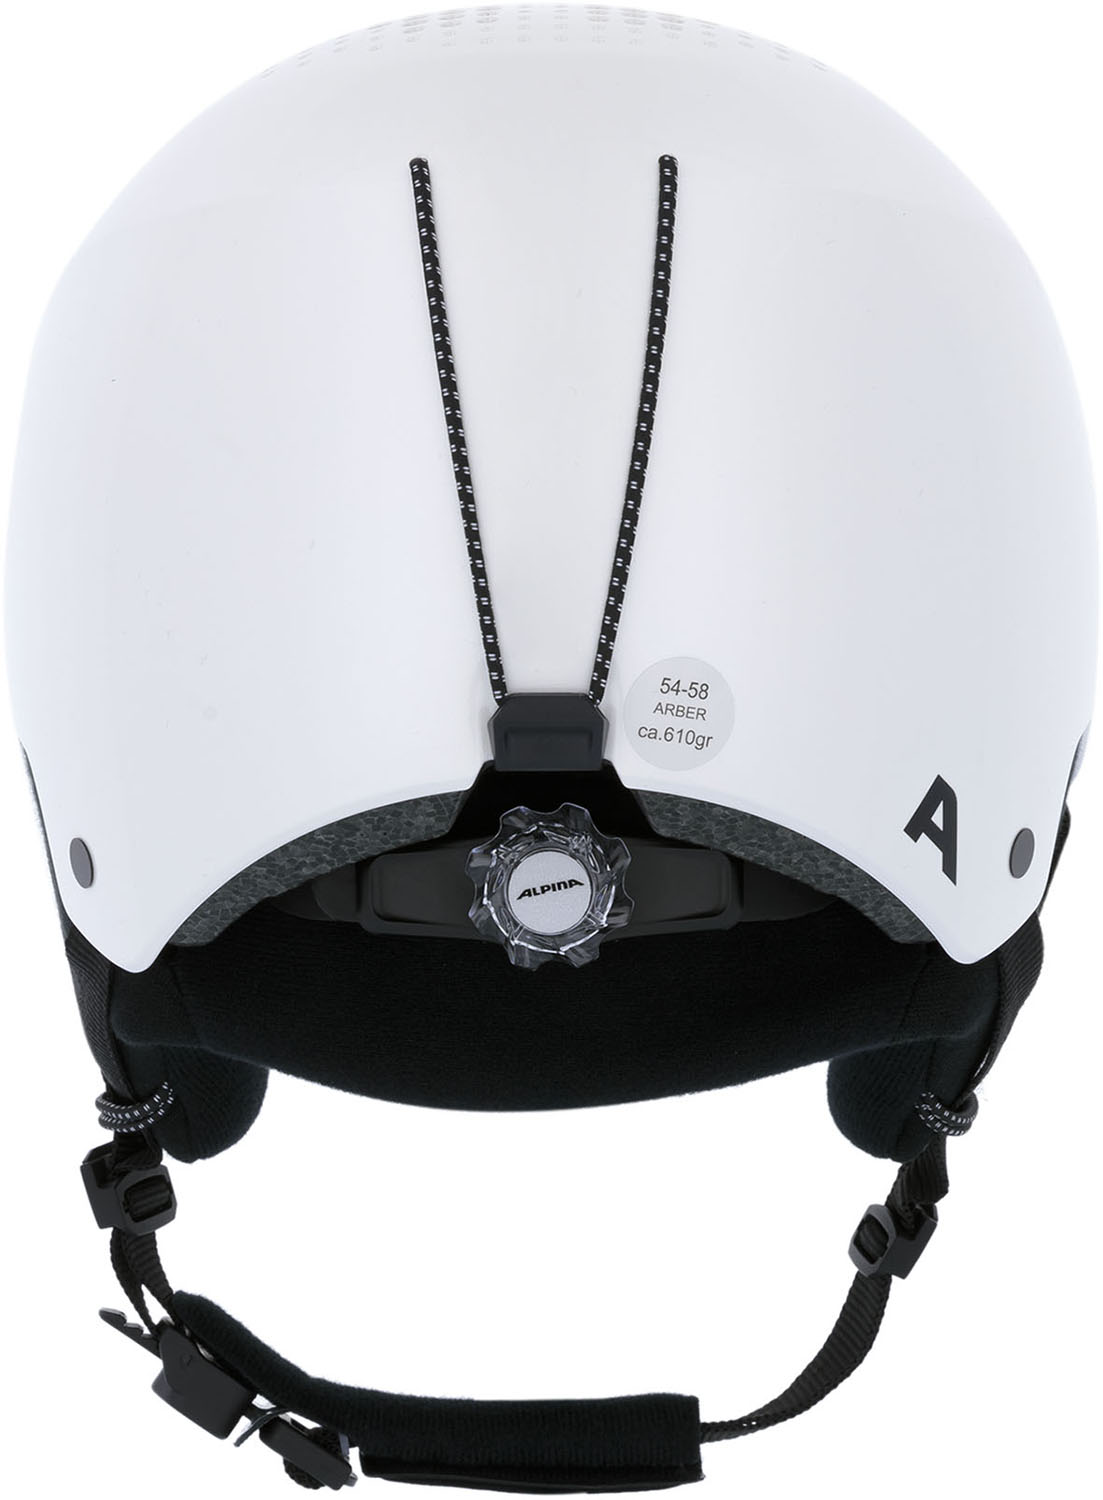 Шлем ALPINA Arber White-Metallic Gloss